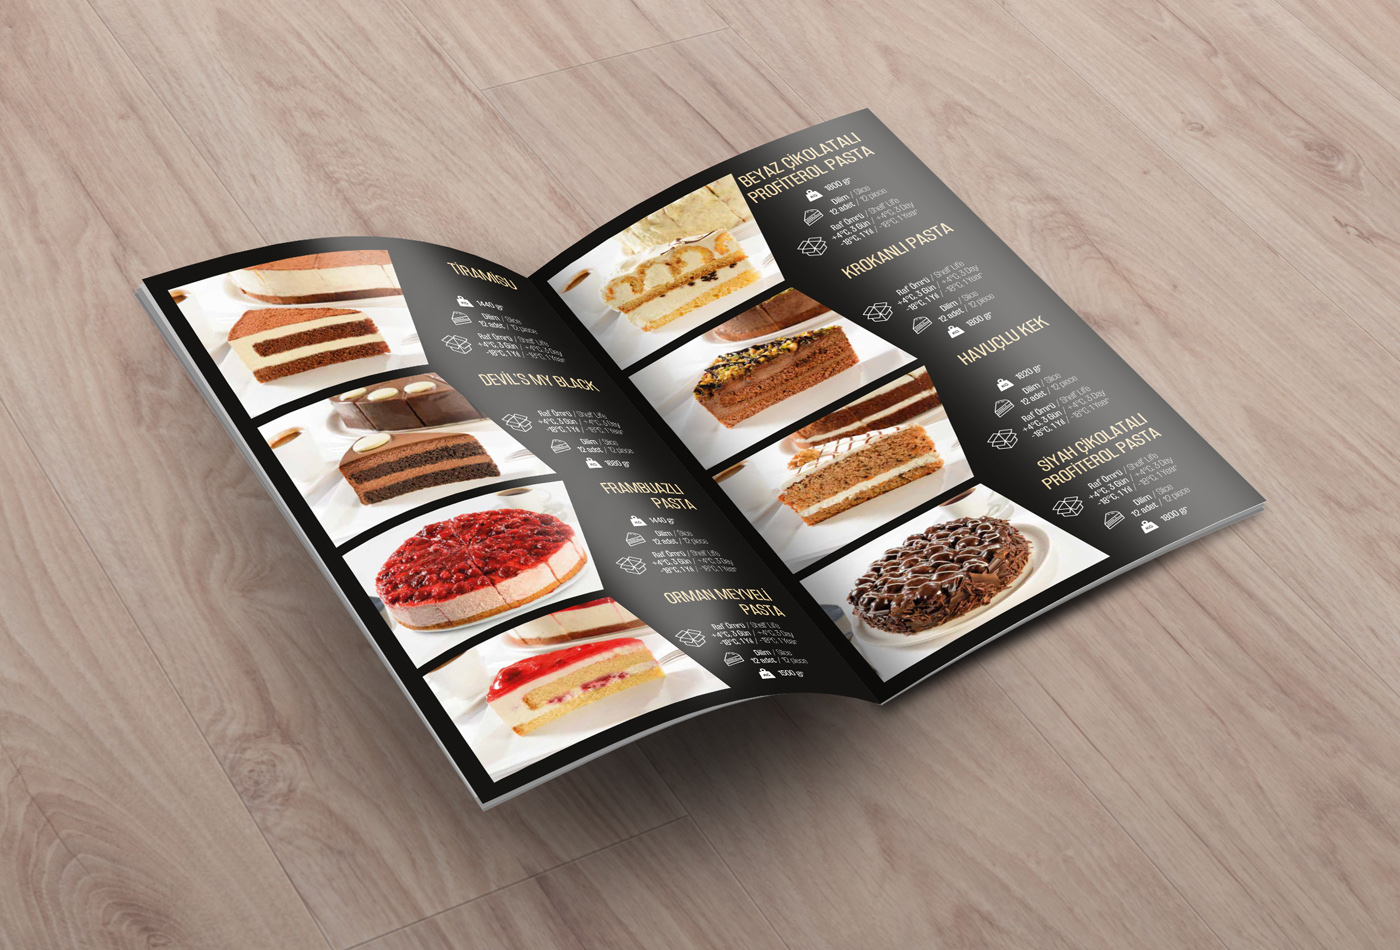 basılı broşür insert katalog kurgu milano cakes ofset renk tasarım